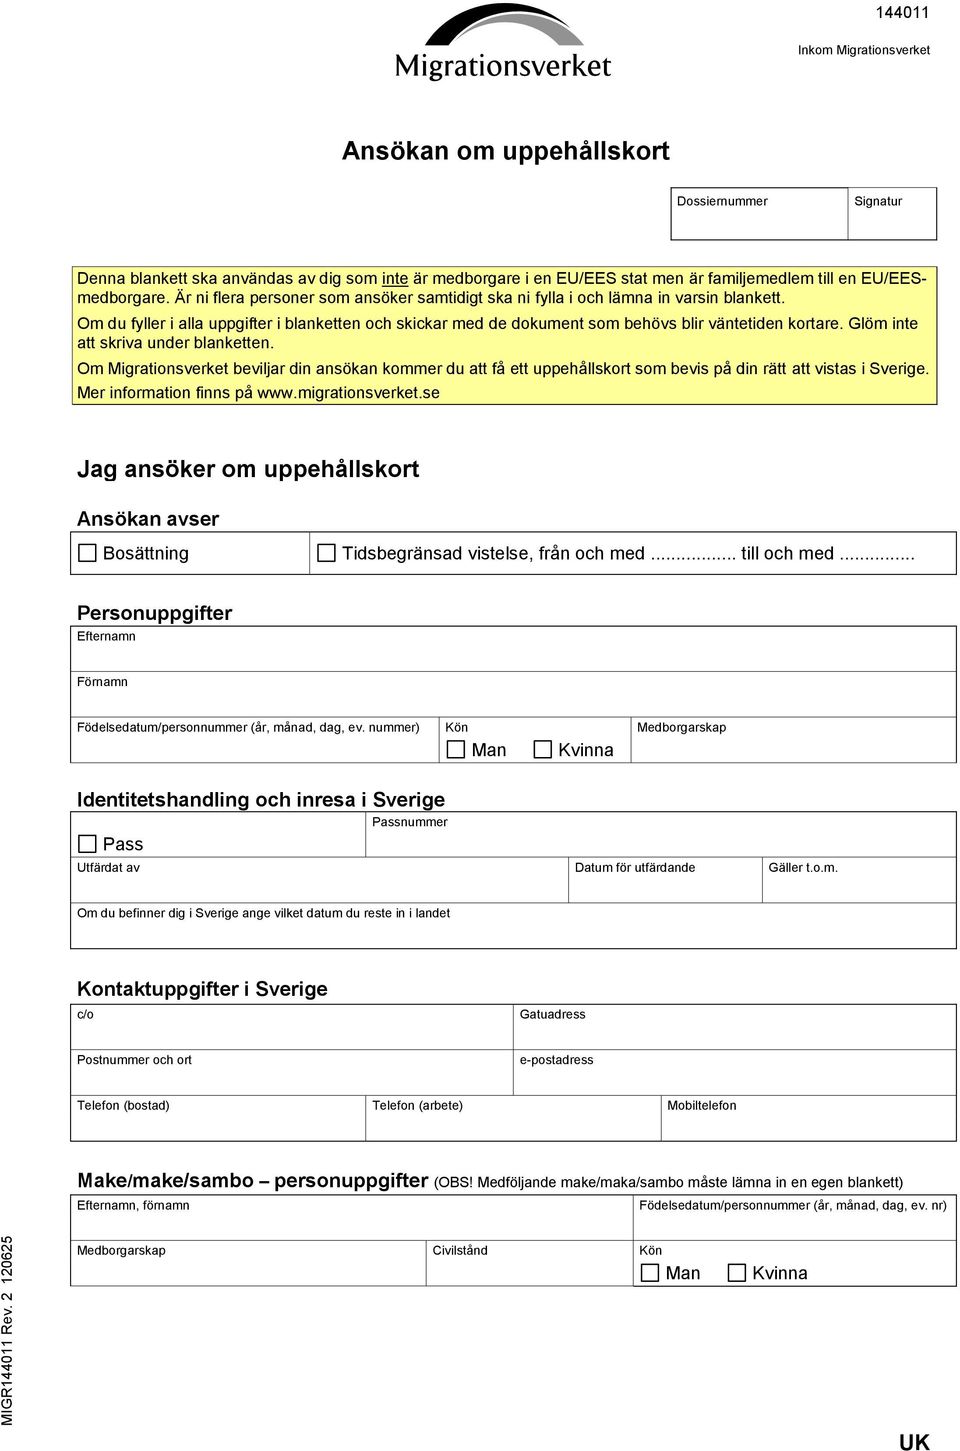 Glöm inte att skriva under blanketten. Om Migrationsverket beviljar din ansökan kommer du att få ett uppehållskort som bevis på din rätt att vistas i Sverige. Mer information finns på www.